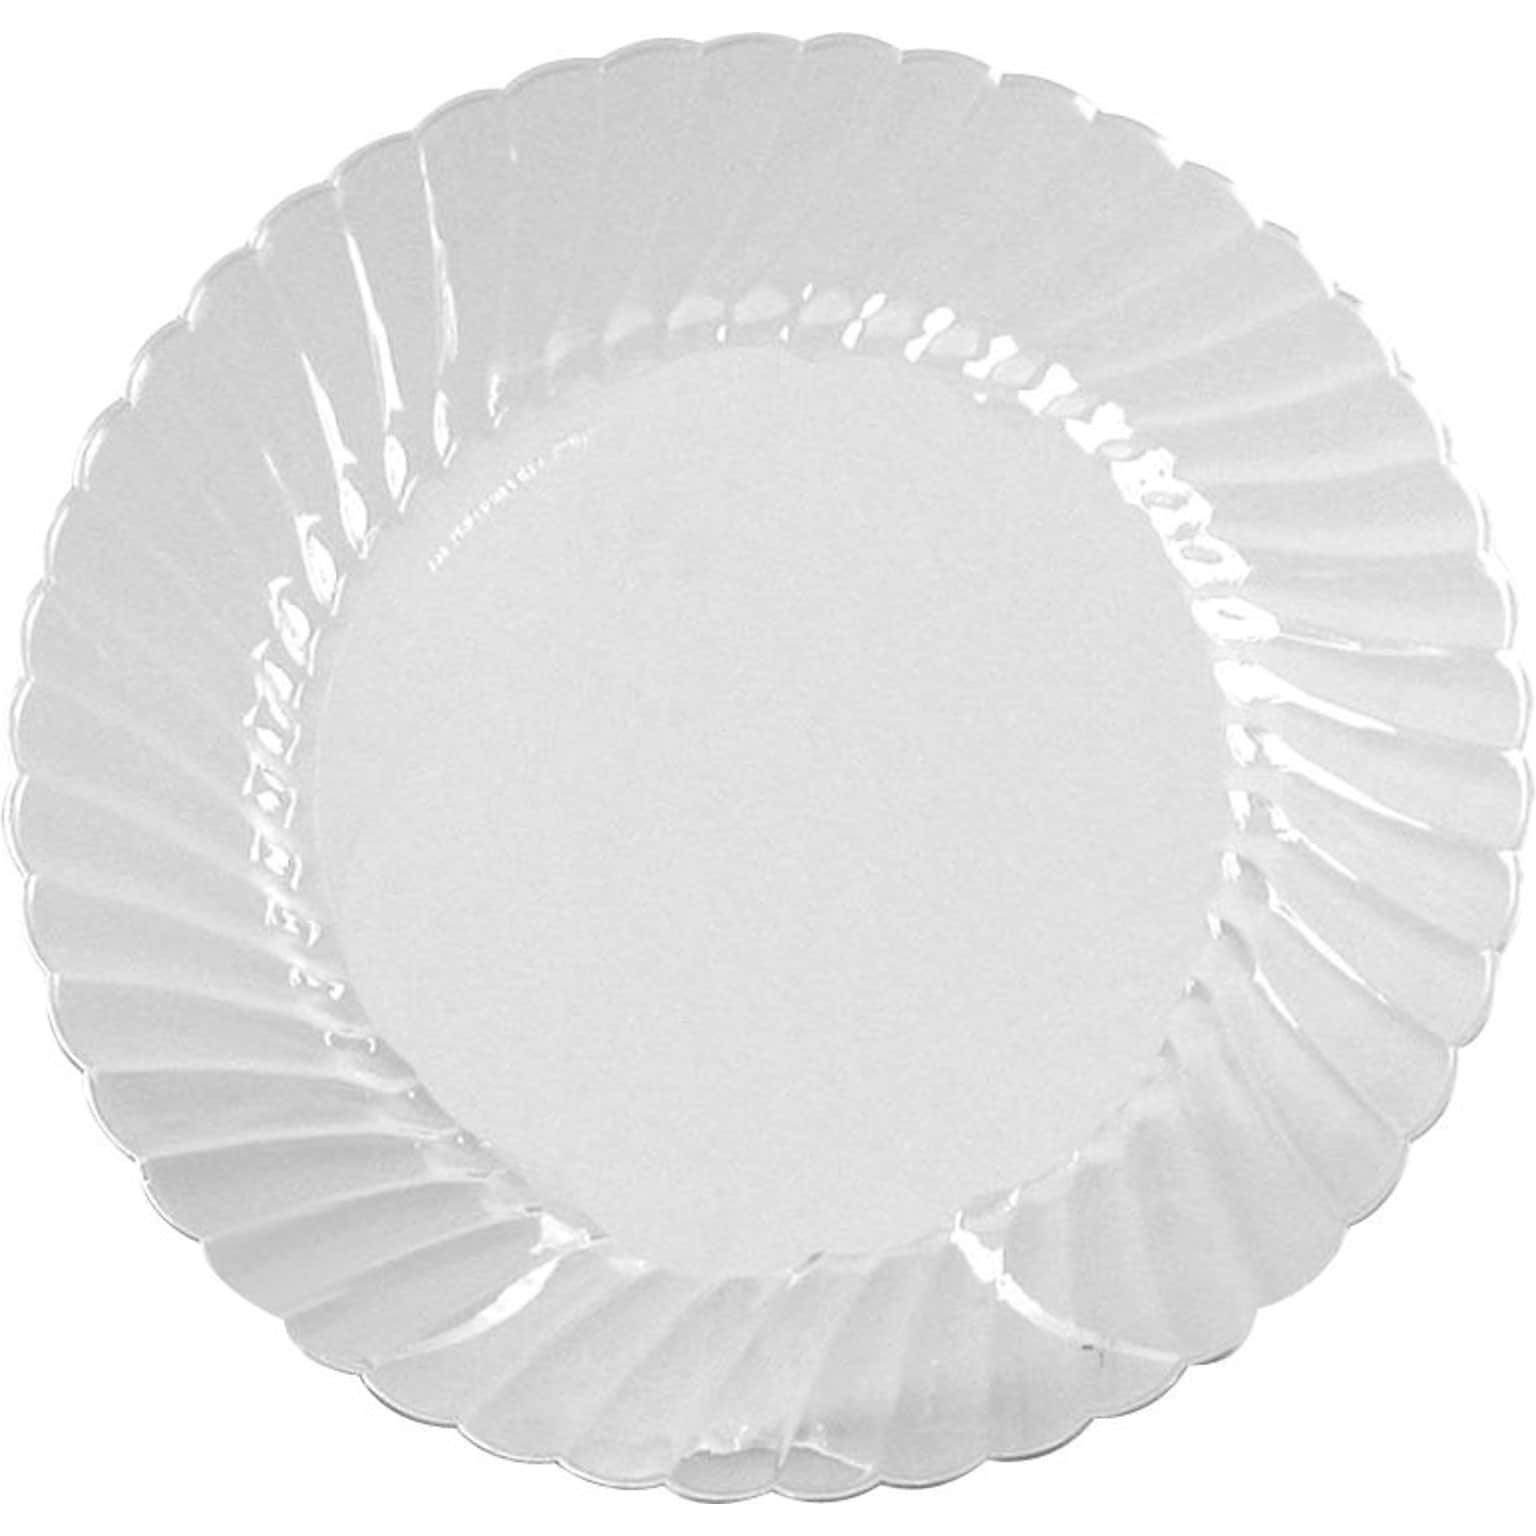 WNA Classicware Plastic Plates, 7.5, Clear, 180/Carton (WNACW75180)